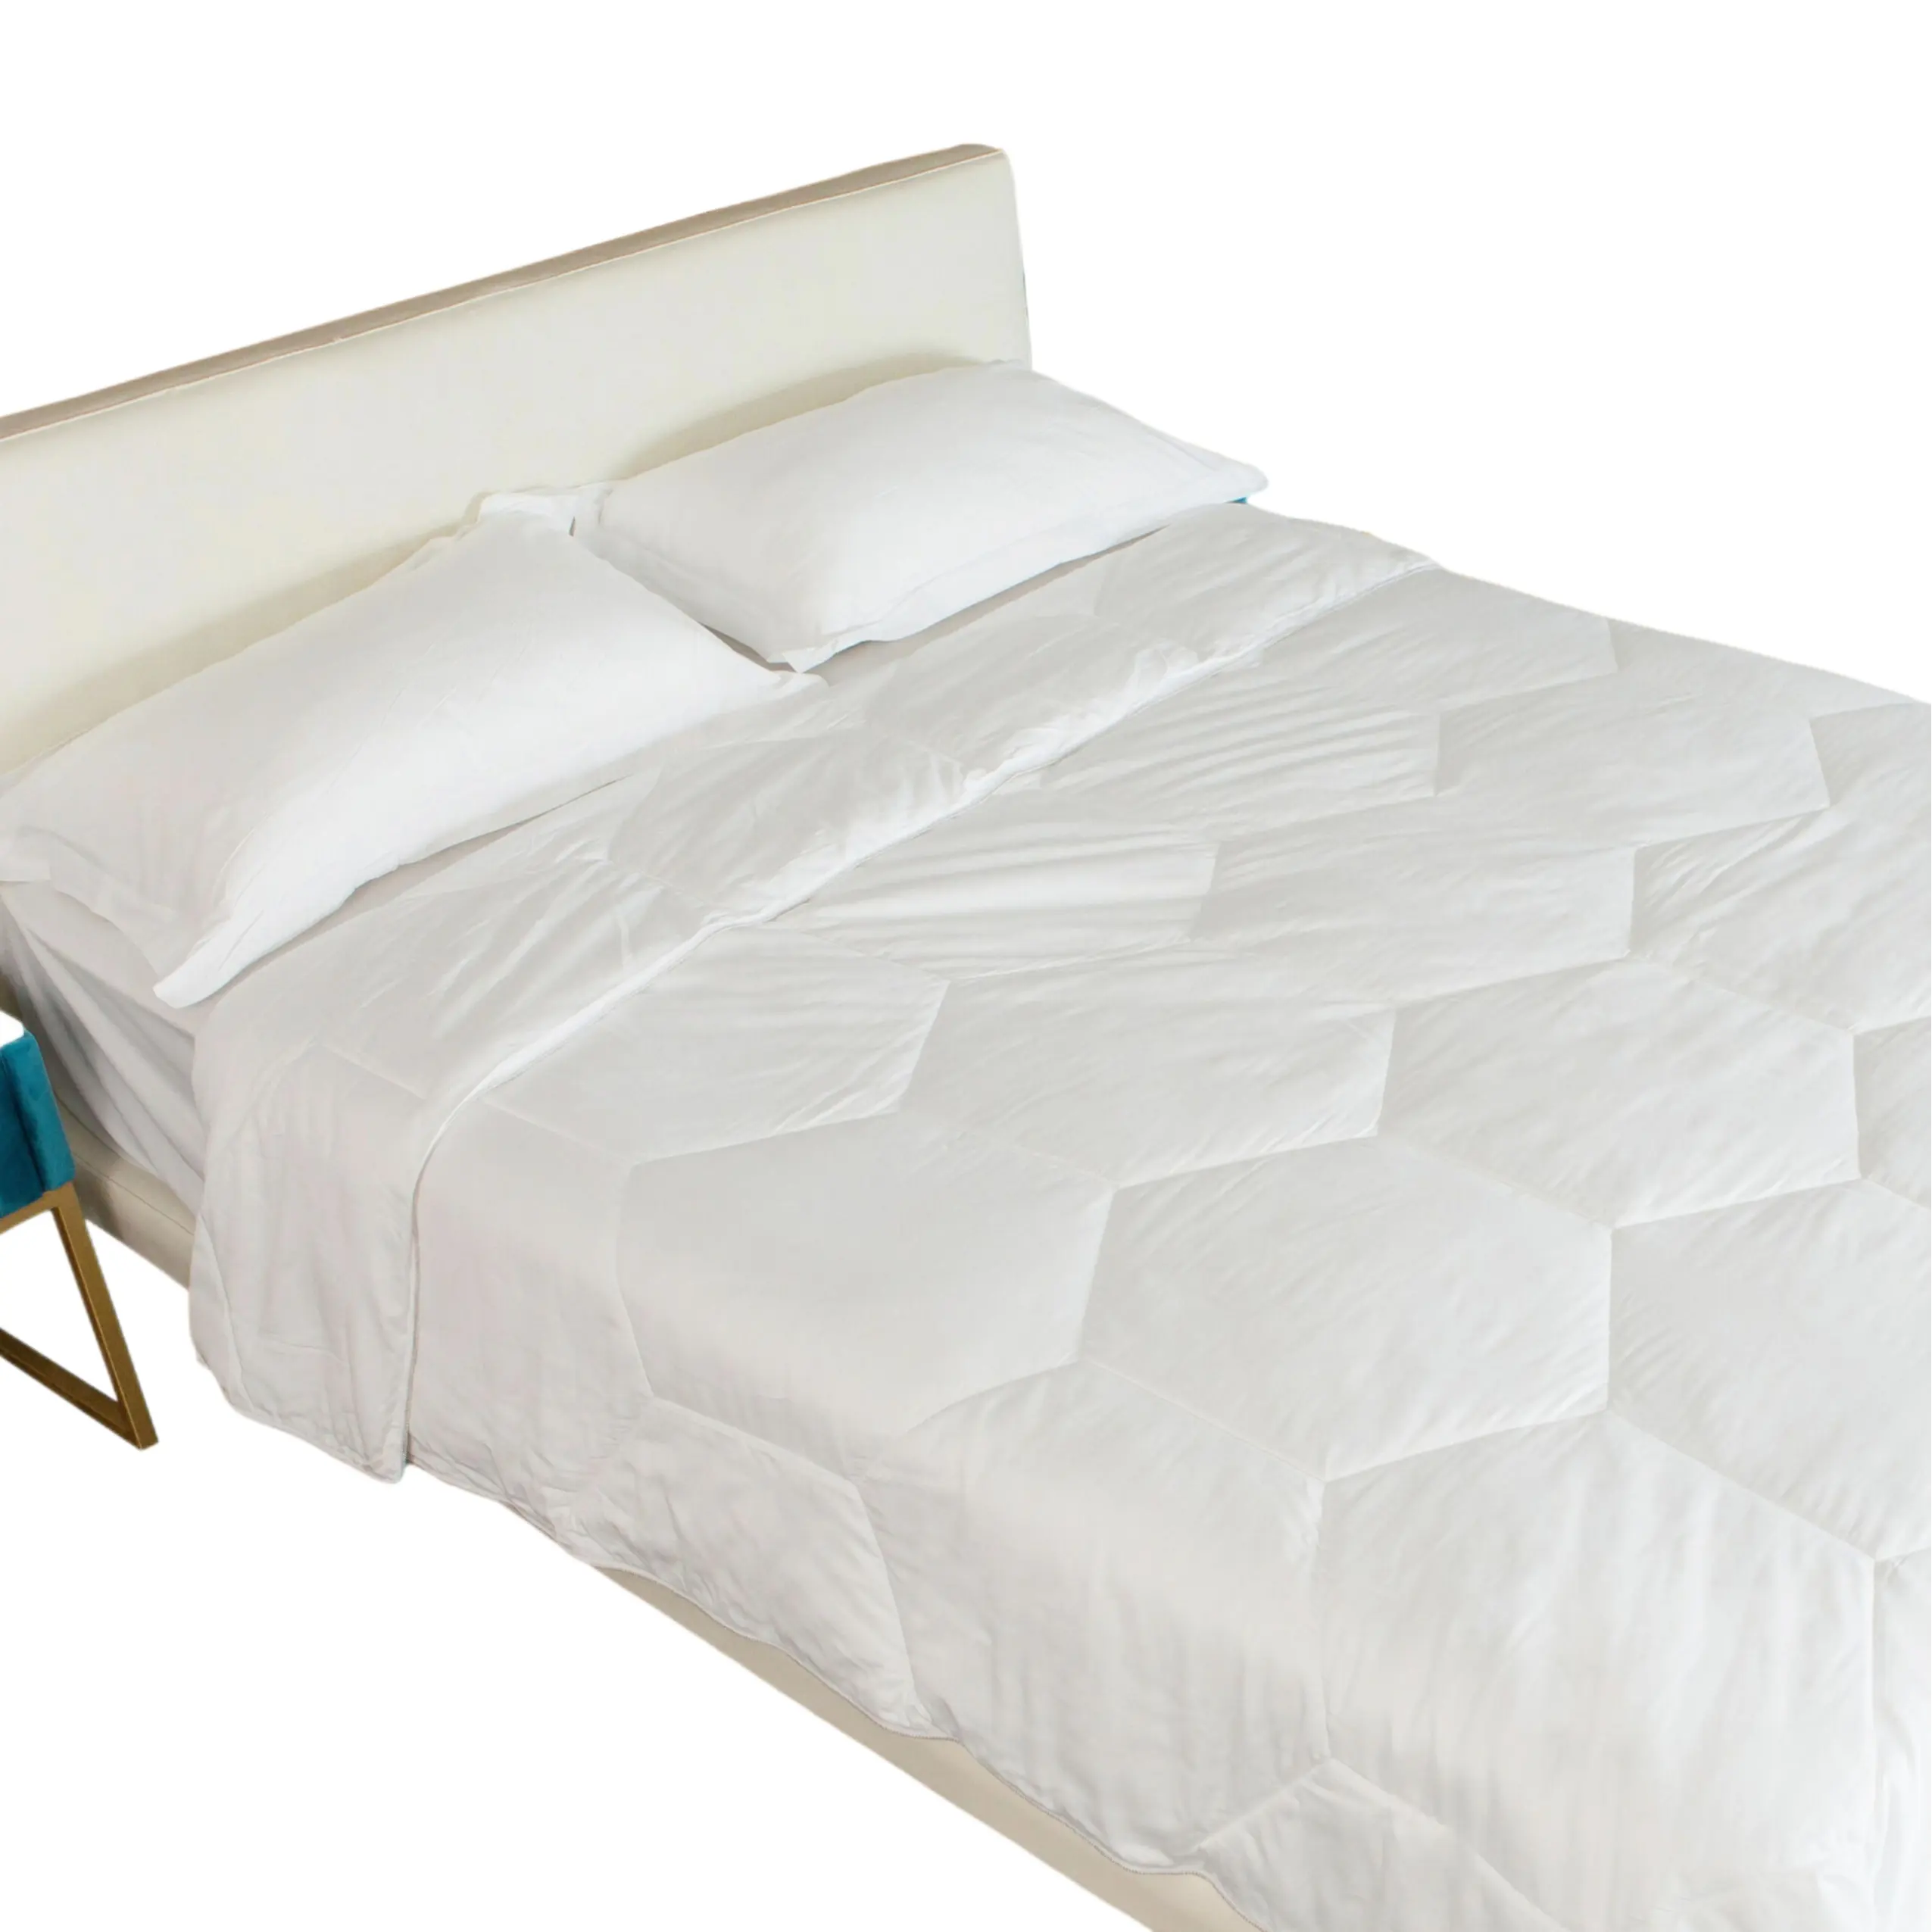 100% Lyocell Tencel bedding comforter white quilted design Down Alternative comforter duvet